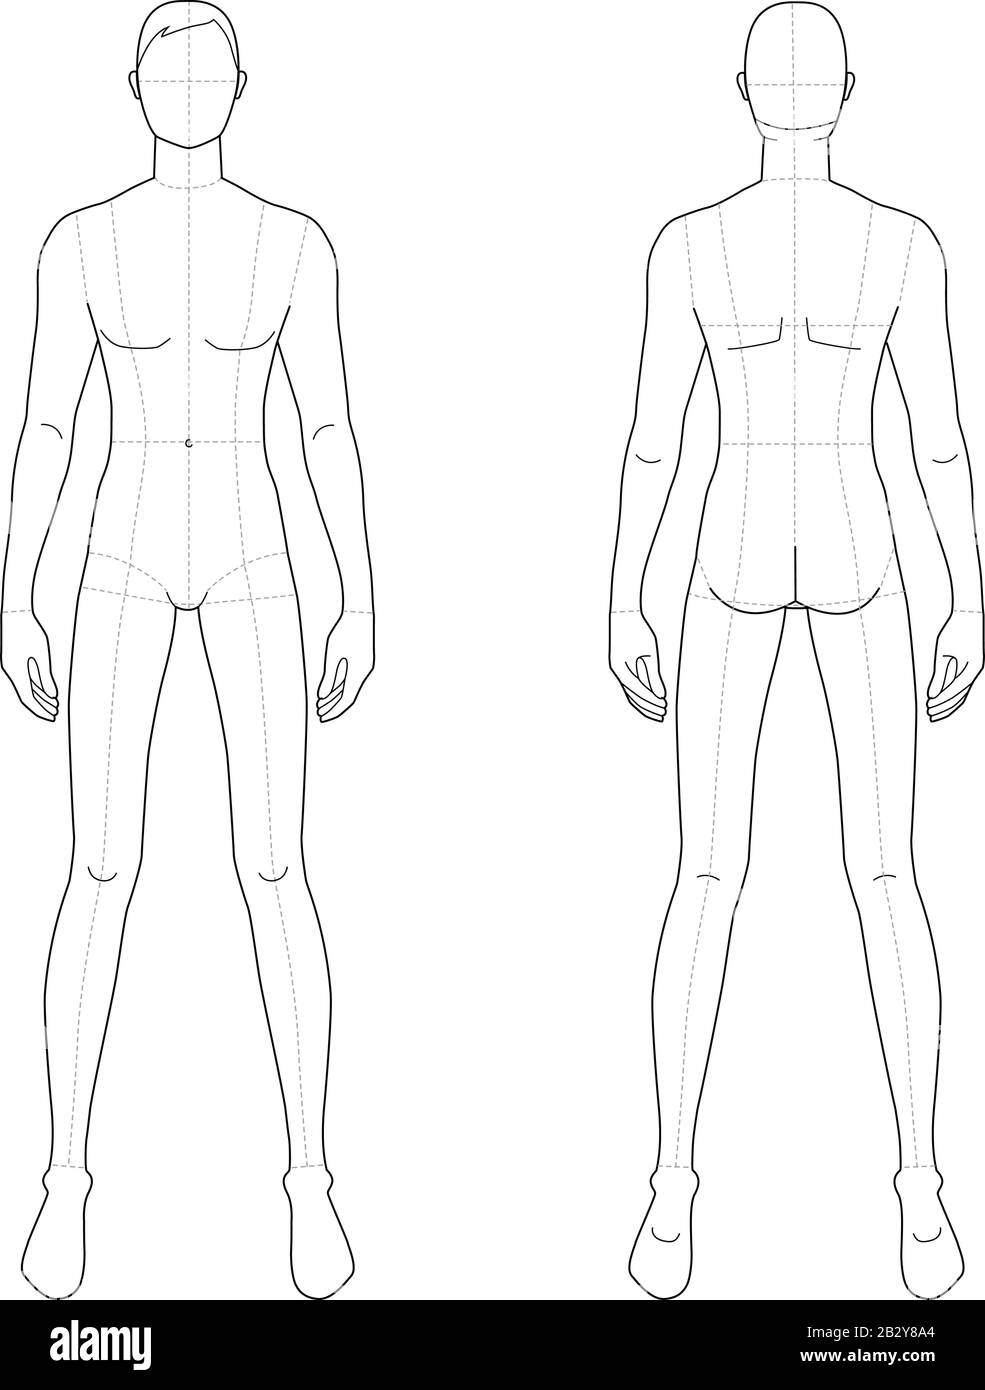 Modèle de mode d'hommes debout avec de larges jambes. 9 dimensions de tête pour le dessin technique avec lignes principales. Les messieurs sont en vue avant et arrière. Silhouette vectorielle pour l'esquisse et l'illustration de mode. Illustration de Vecteur